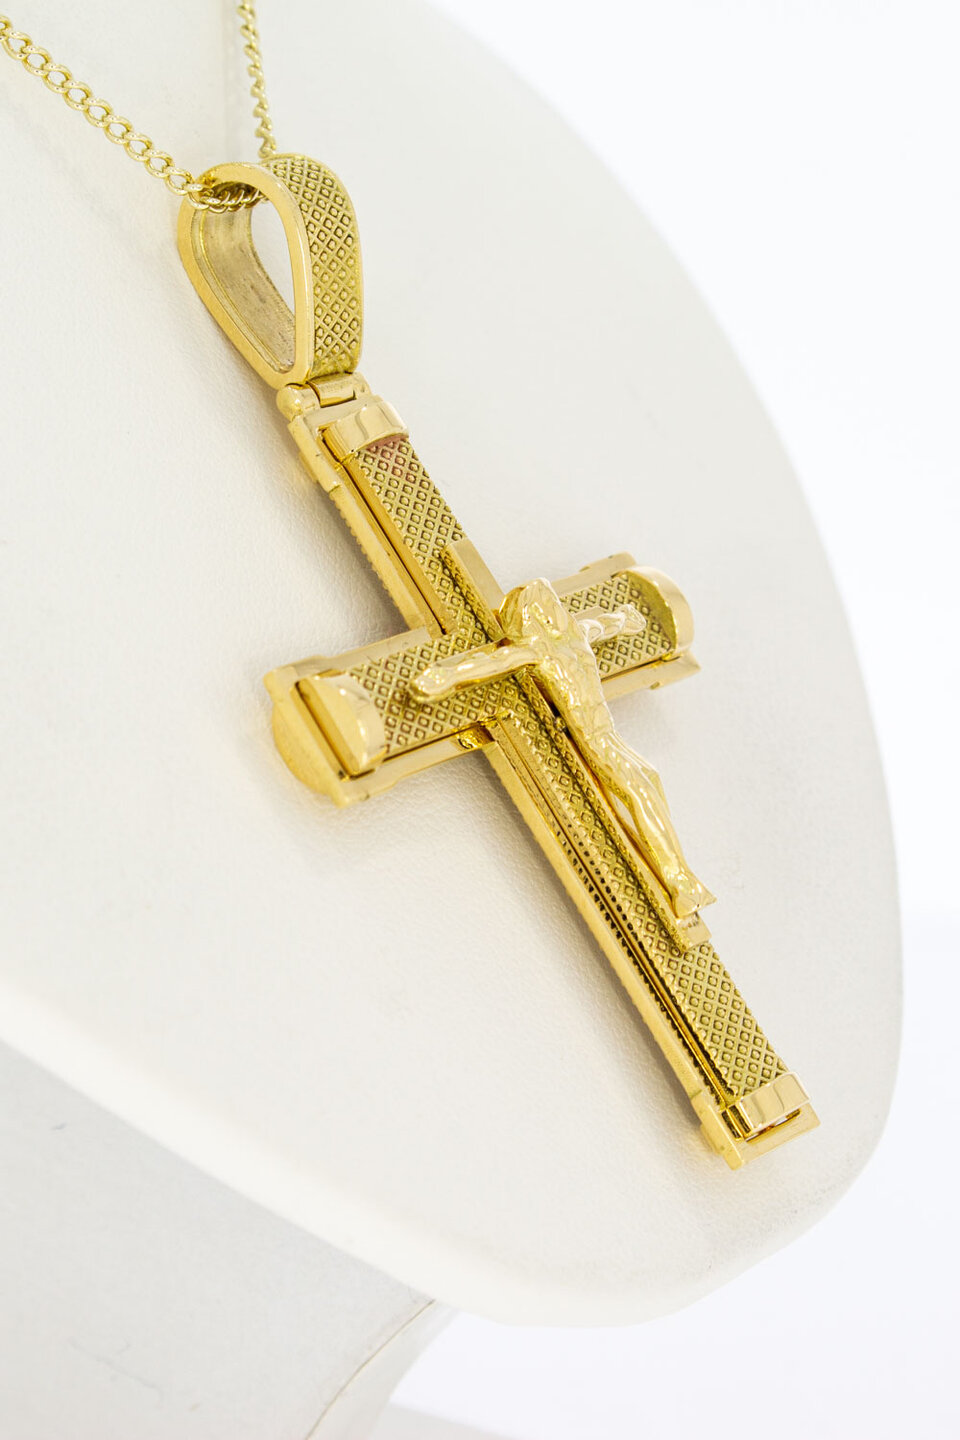 Kreuzkettenanhänger 750 Gold - 6,1 cm